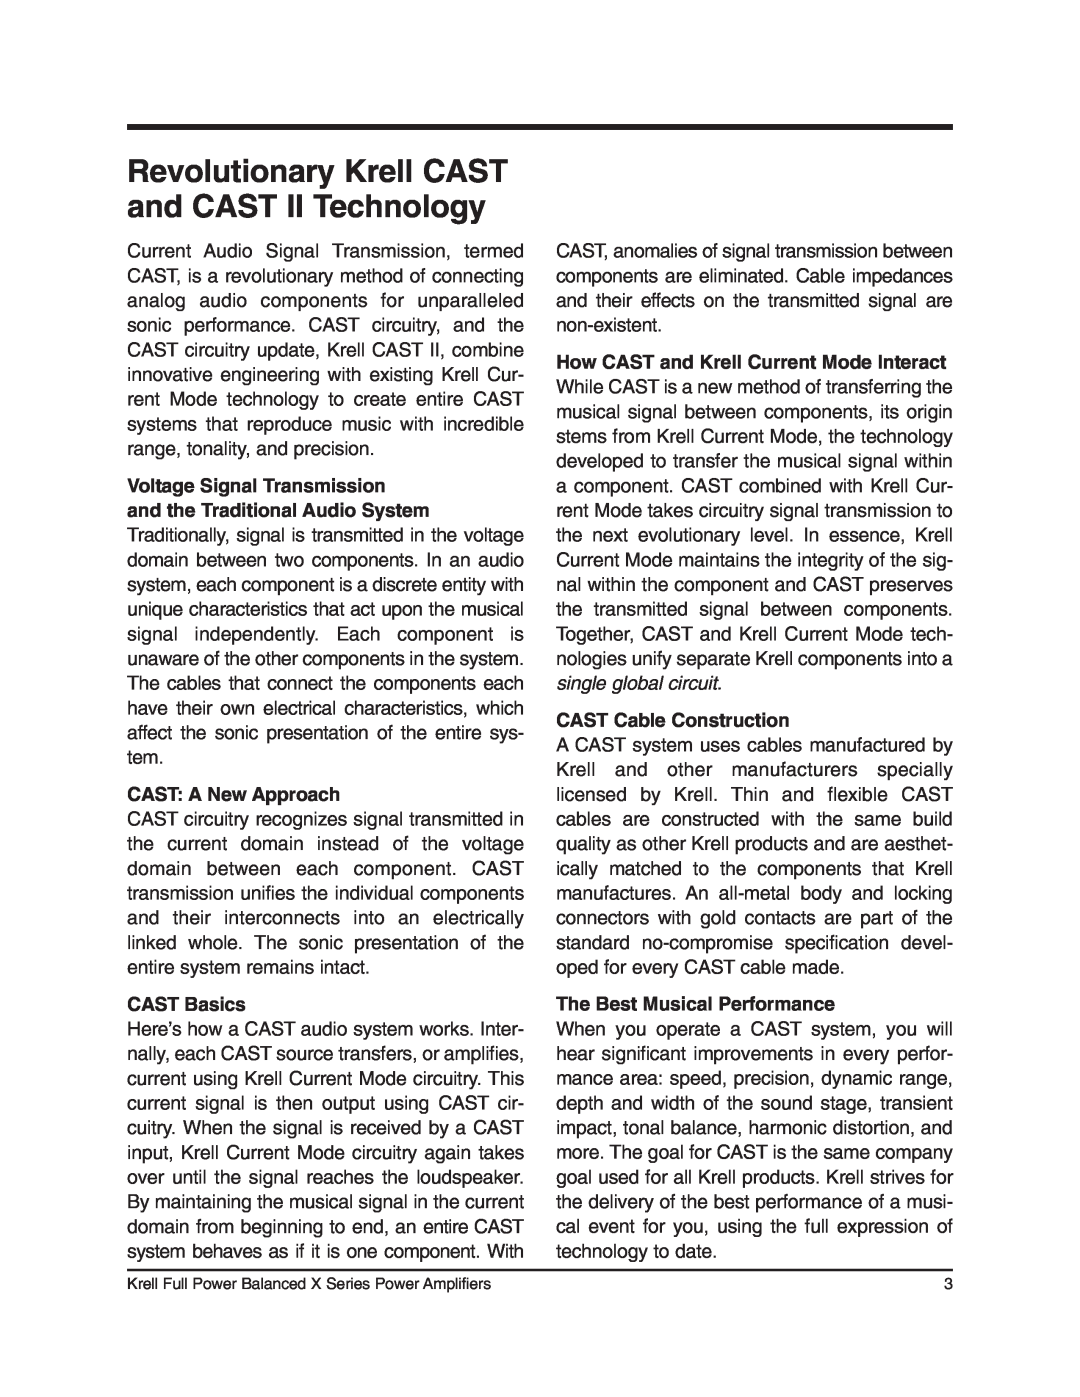 Krell Industries 400cx, 350Mcx, 450Mcx Revolutionary Krell CAST and CAST II Technology, CAST A New Approach, CAST Basics 